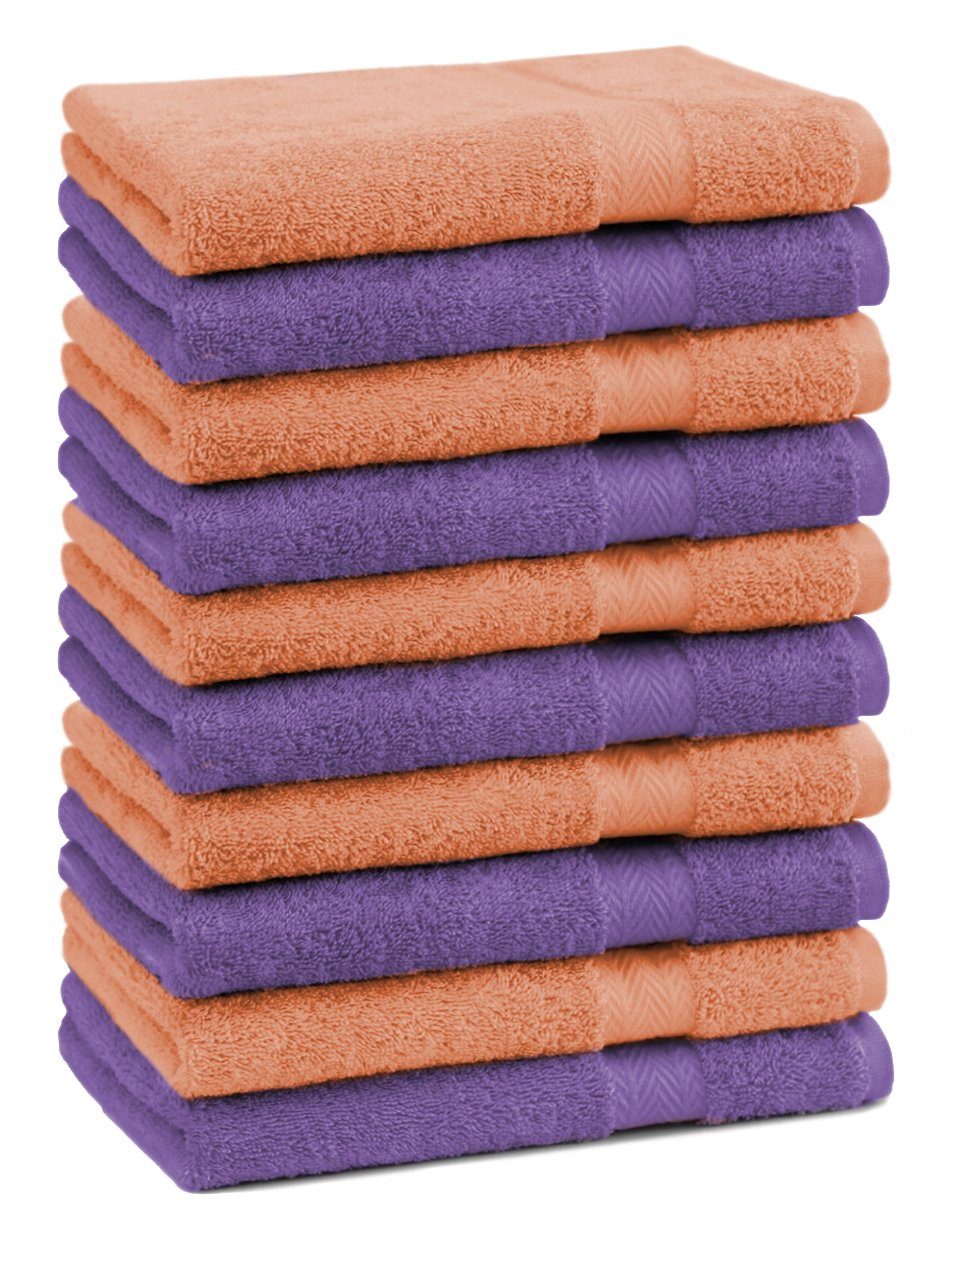 Betz Gästehandtücher 10 Stück Gästehandtücher Premium 100% Baumwolle Gästetuch-Set 30x50 cm Farbe lila und orange, 100% Baumwolle